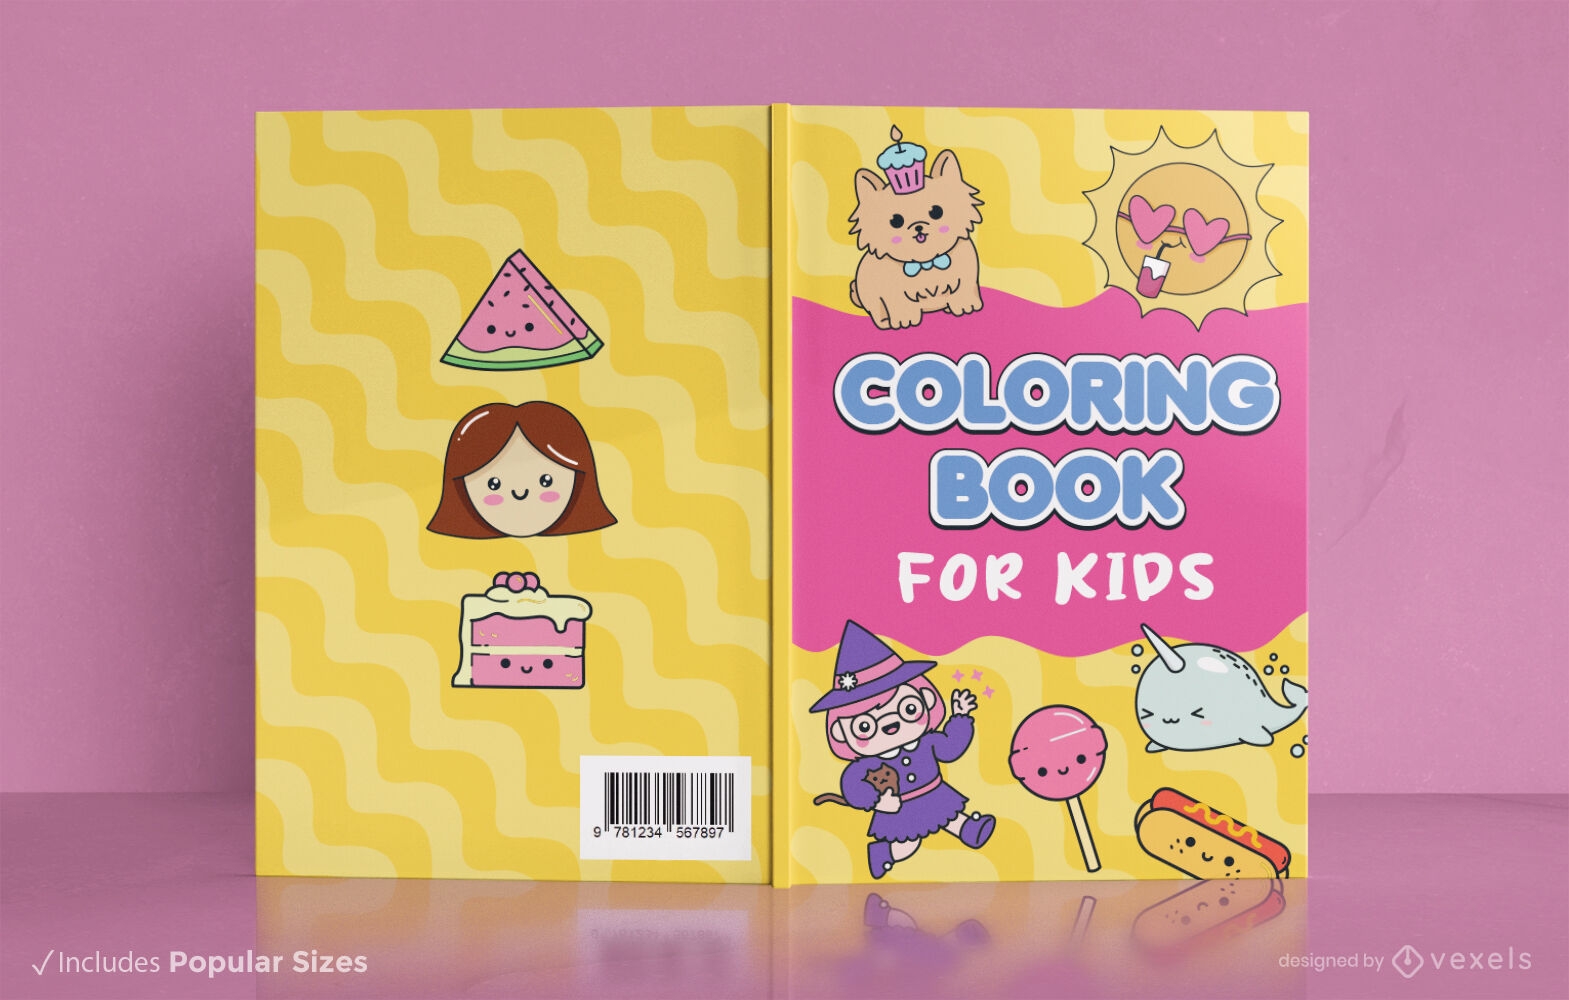 Design de capa de livro para colorir infantil com personagens l?dicos